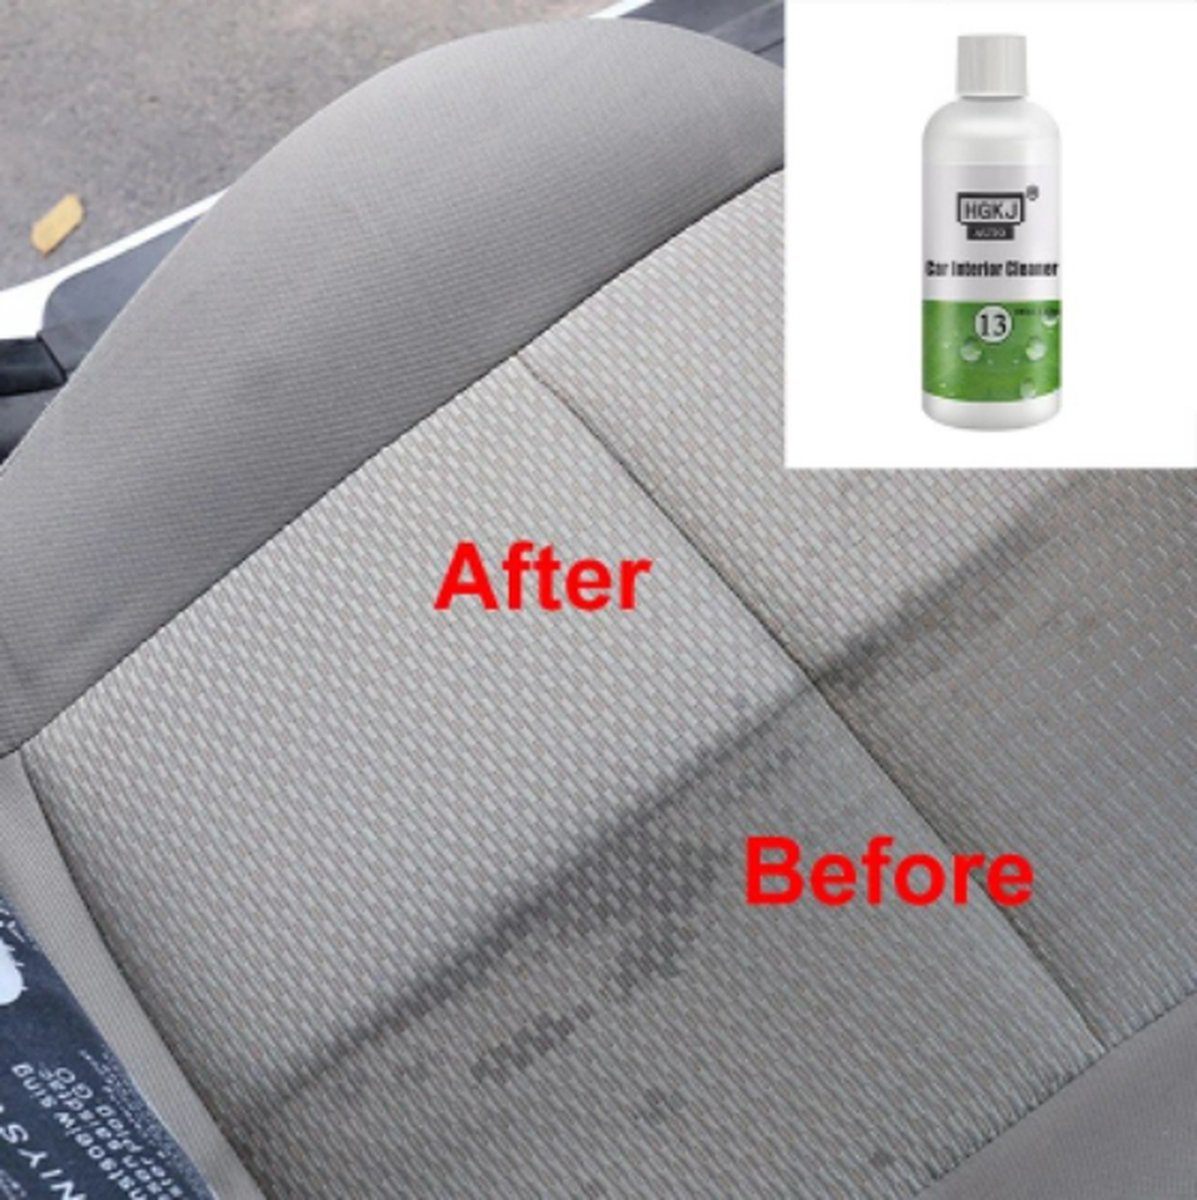 TLVX Interieur reiniger / Auto bekleding reiniger / Schuim reiniger / Vlekken verwijderen / 50ml / Auto stoelen schoonmaak / Leer en stof schoonmaken / Dashboard schoonmaken / Vlekken bekleding verwijderen / All-In-One / Effectief!.